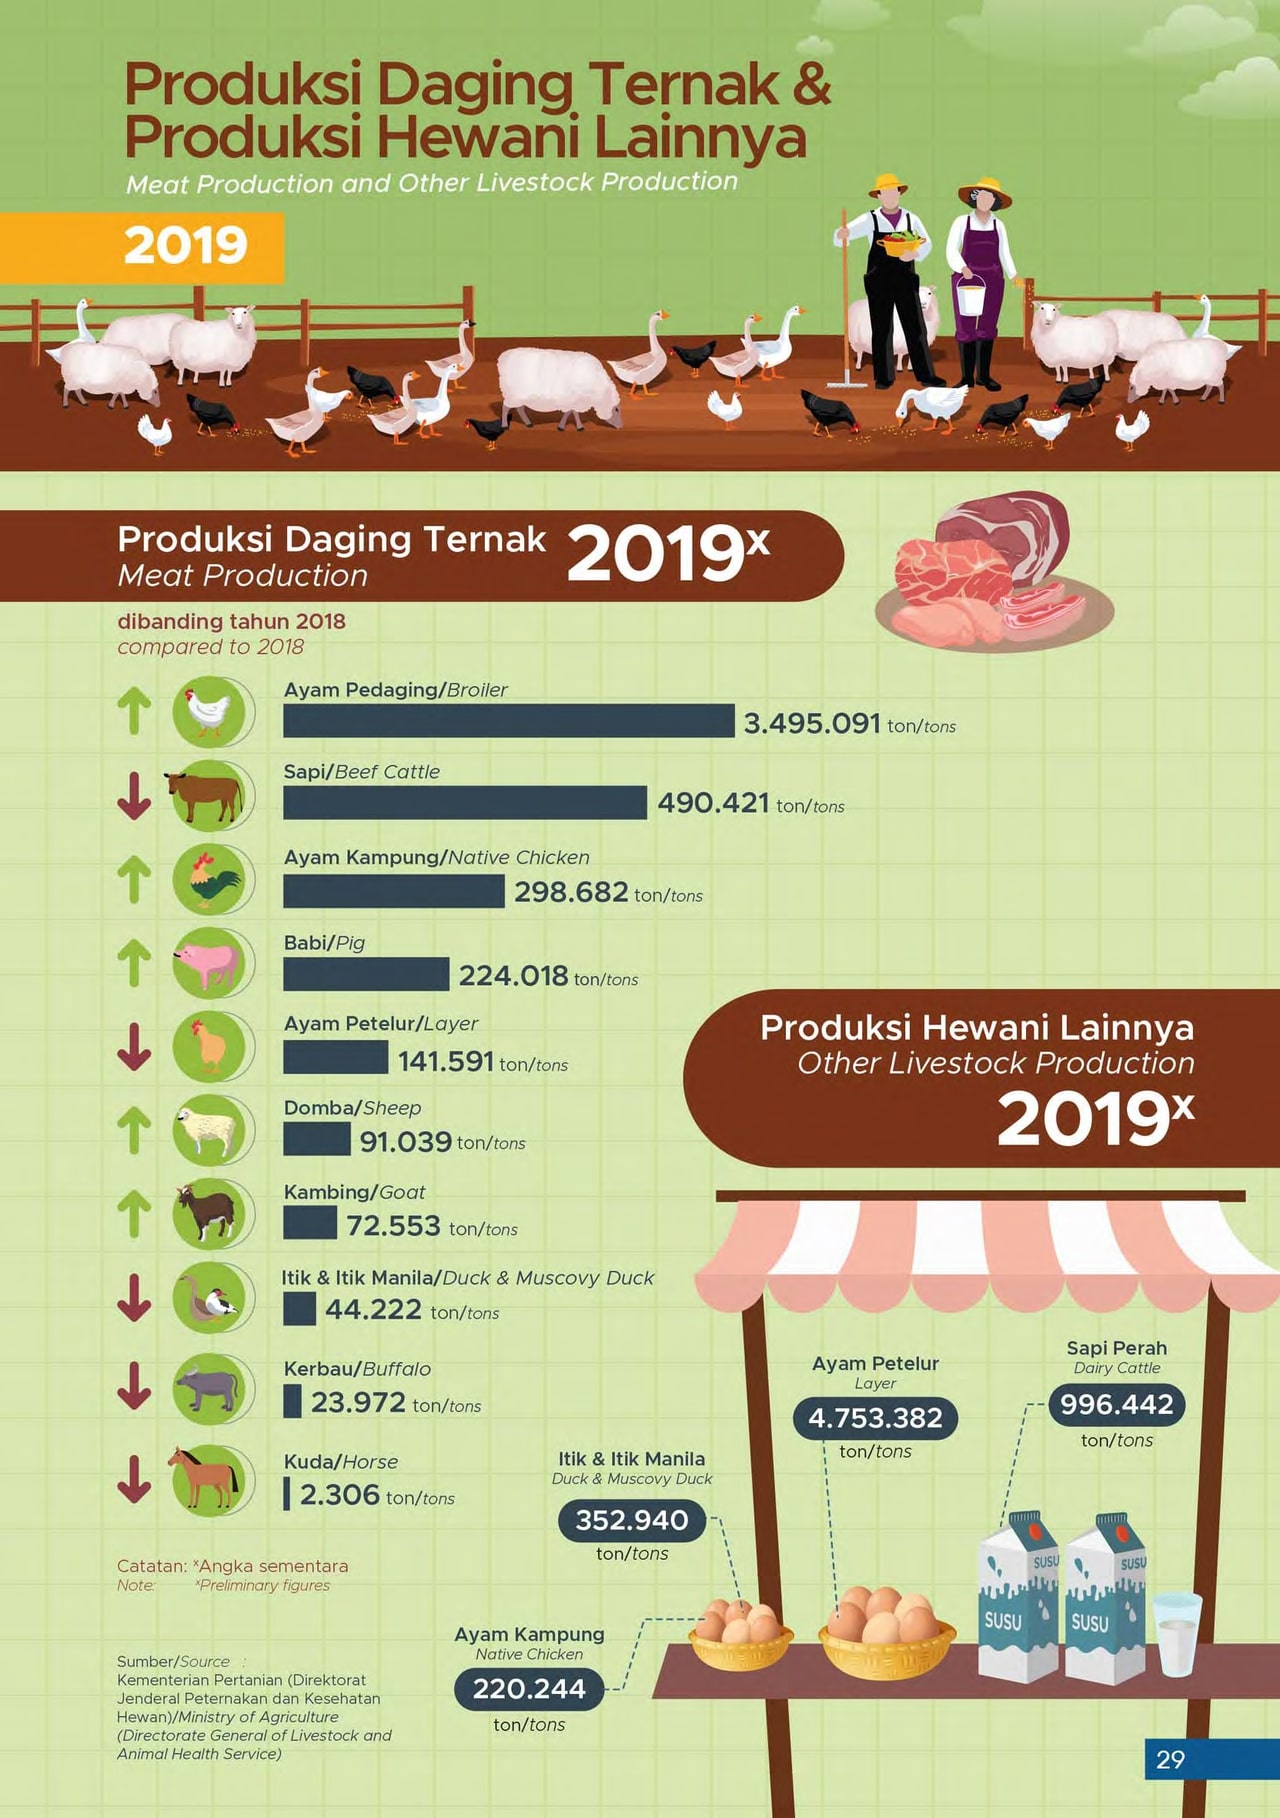 Produksi Daging Ternak & Produksi Hewani Lainnya - 2019 images